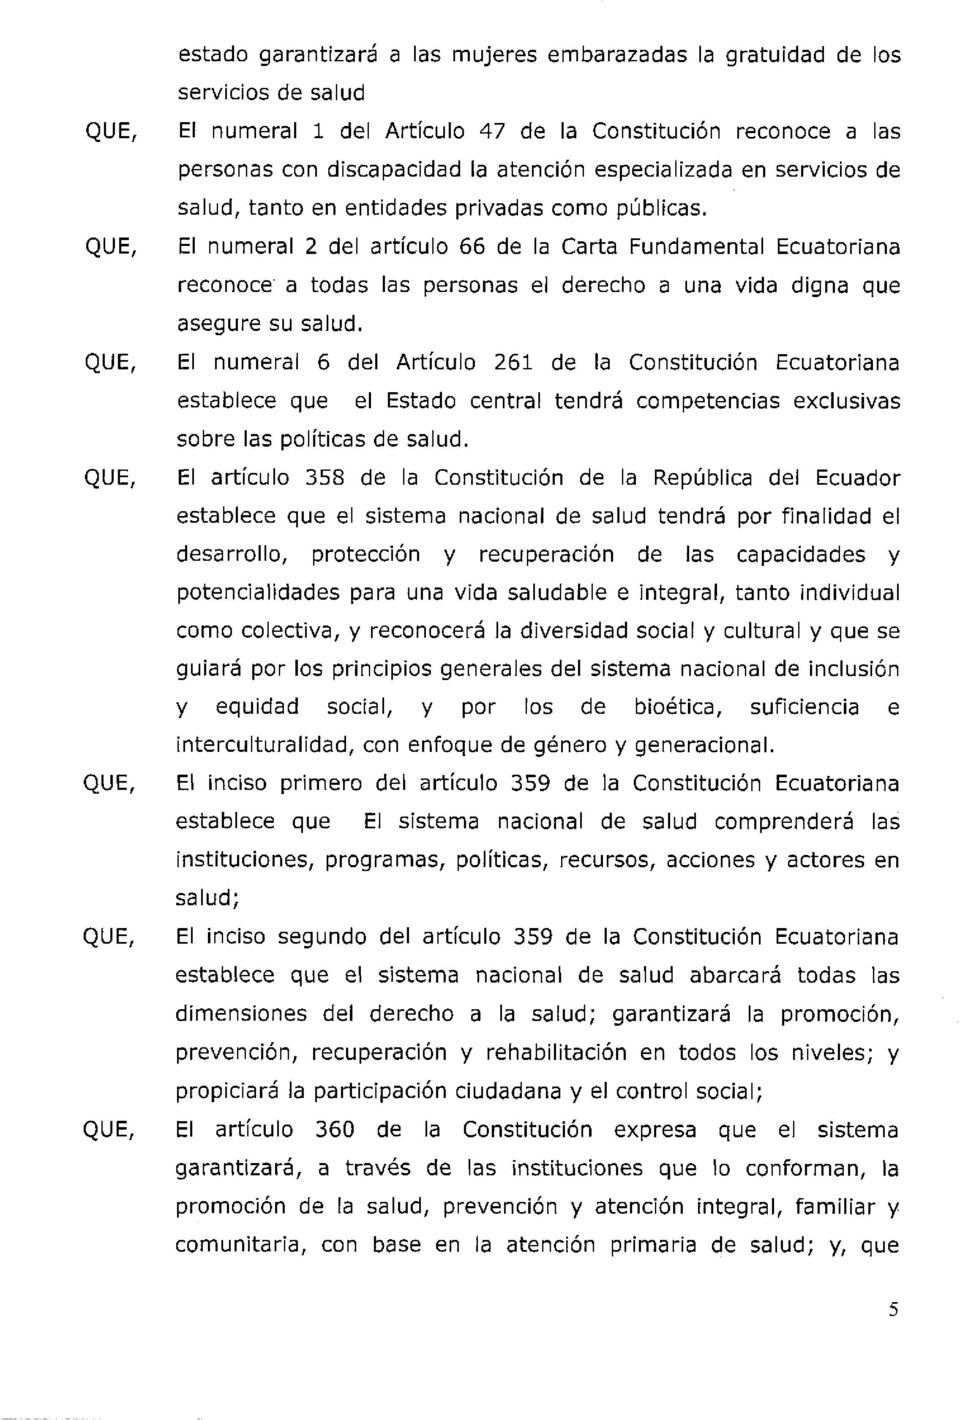 El numeral 2 del artículo 66 de la Carta Fundamental Ecuatoriana reconoce a todas las personas el derecho a una vida digna que asegure su salud.